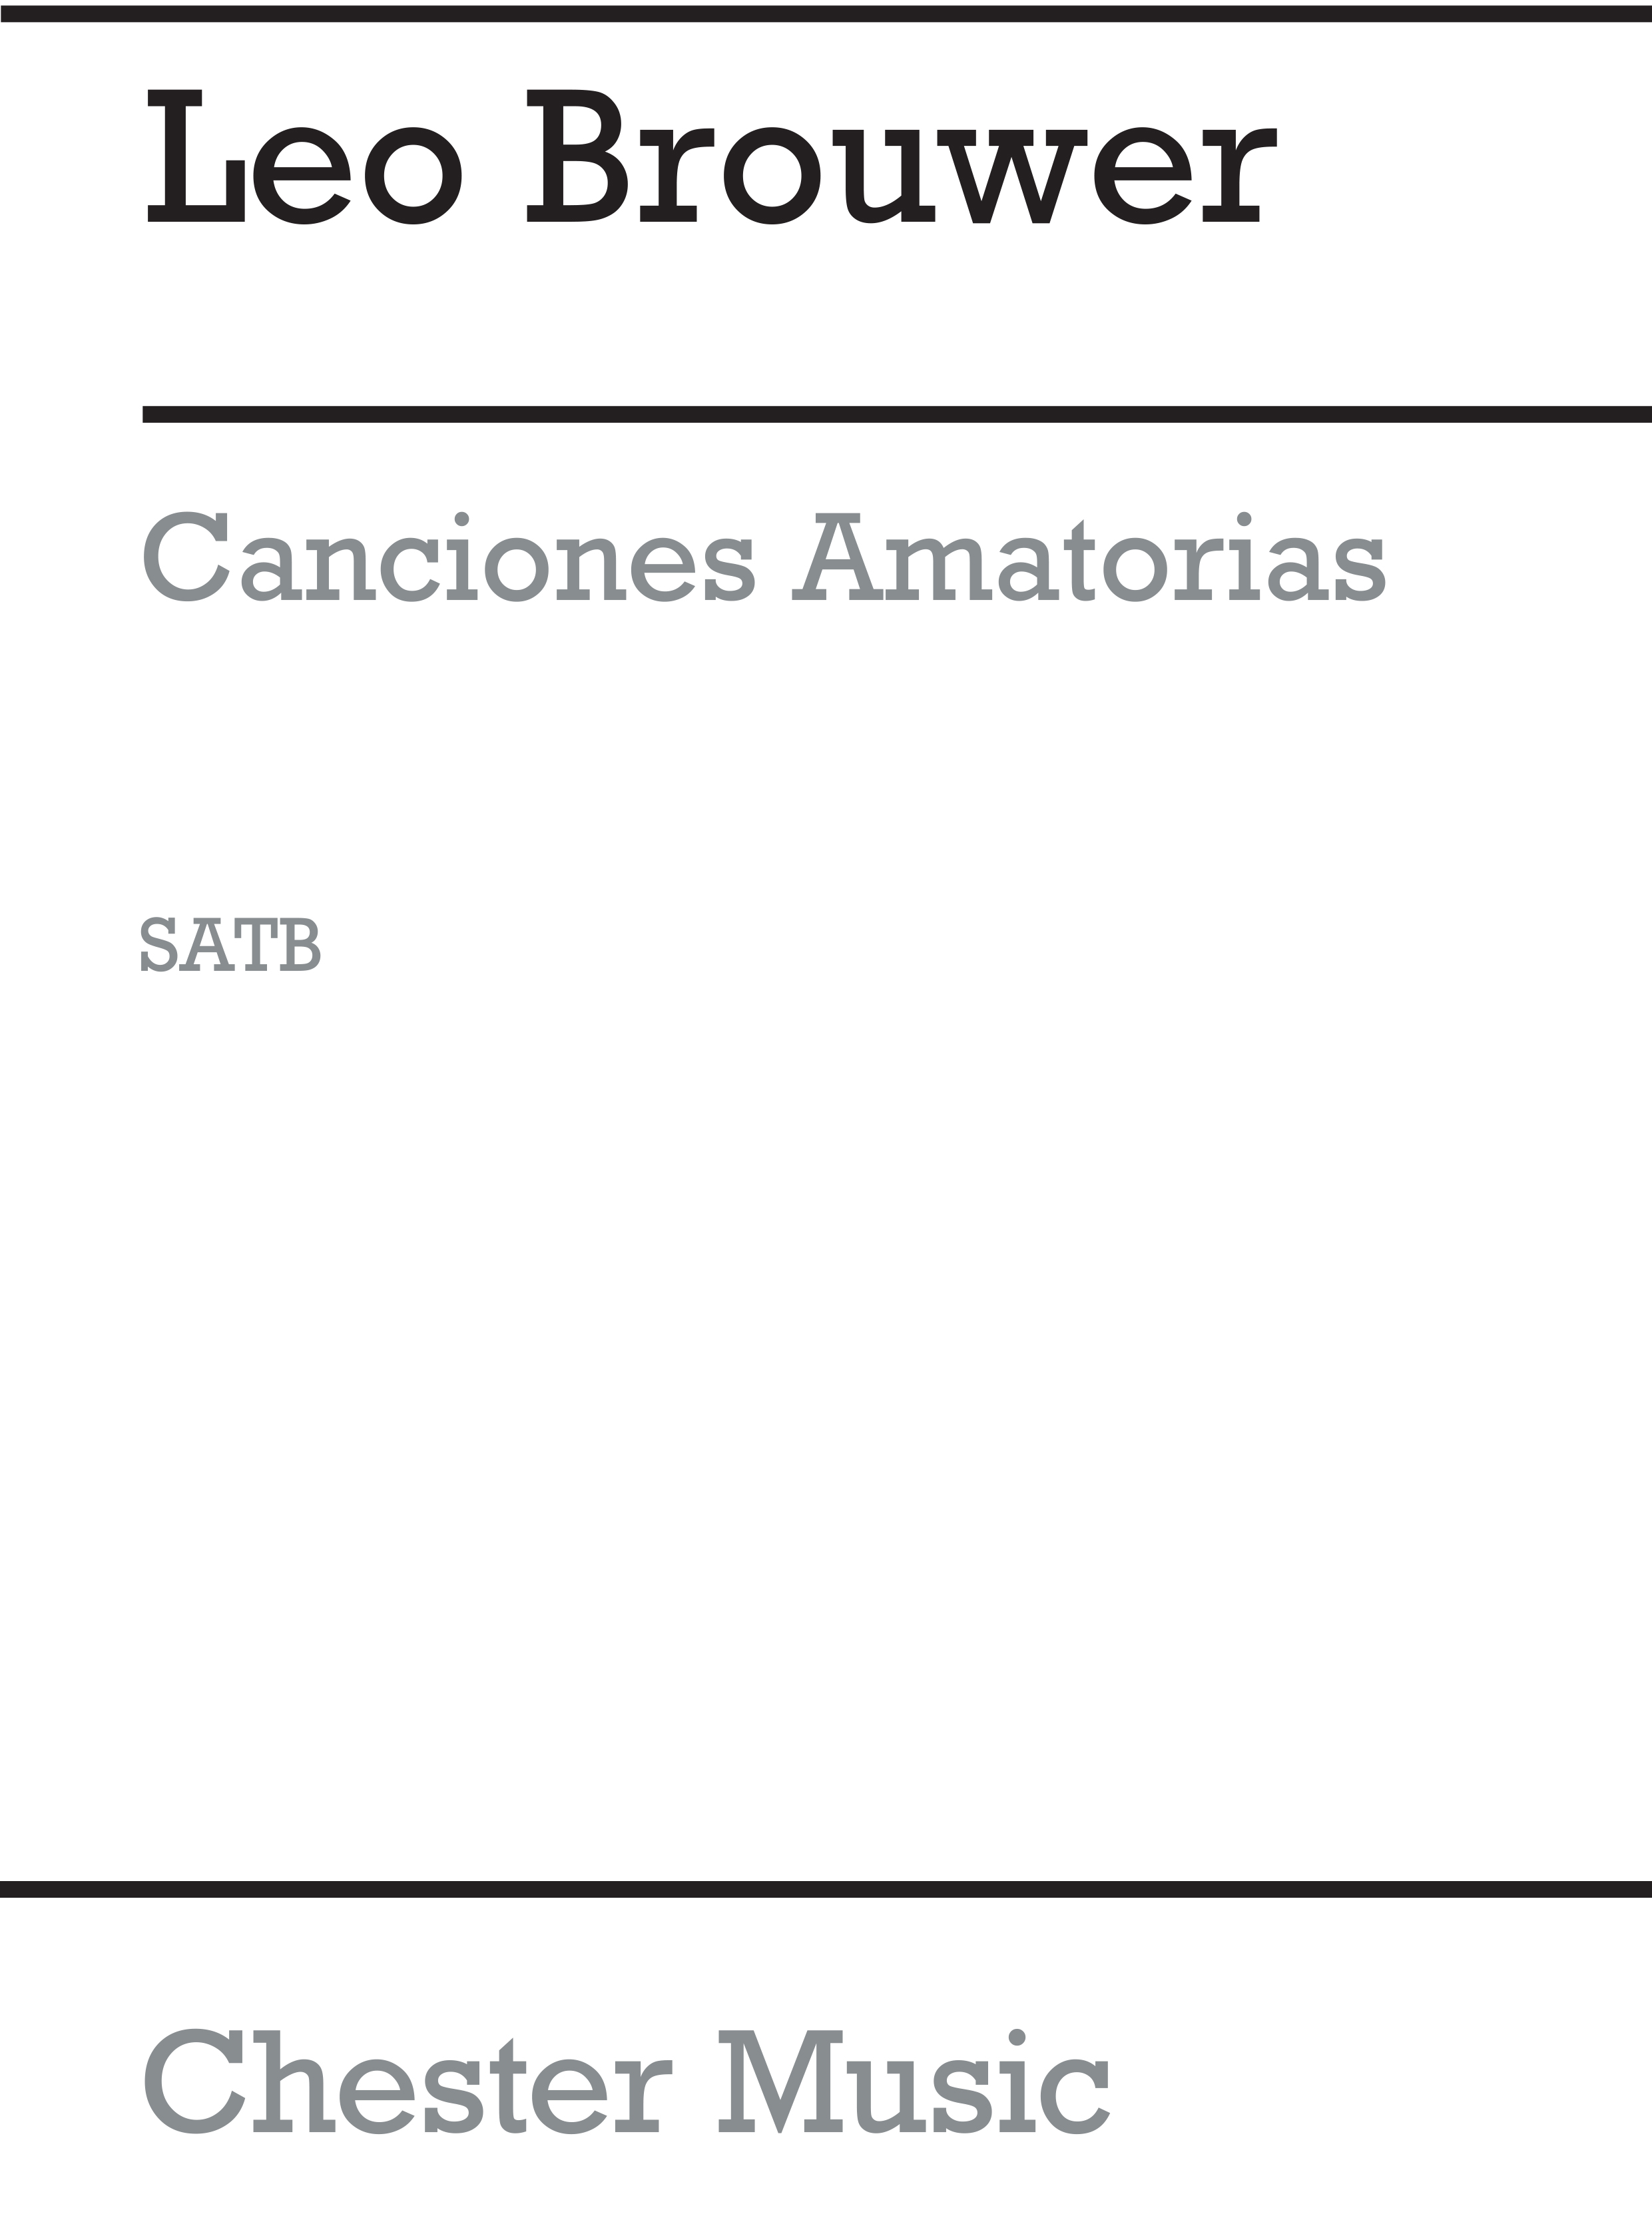 Leo Brouwer: Canciones Amatorias: SATB: Vocal Score